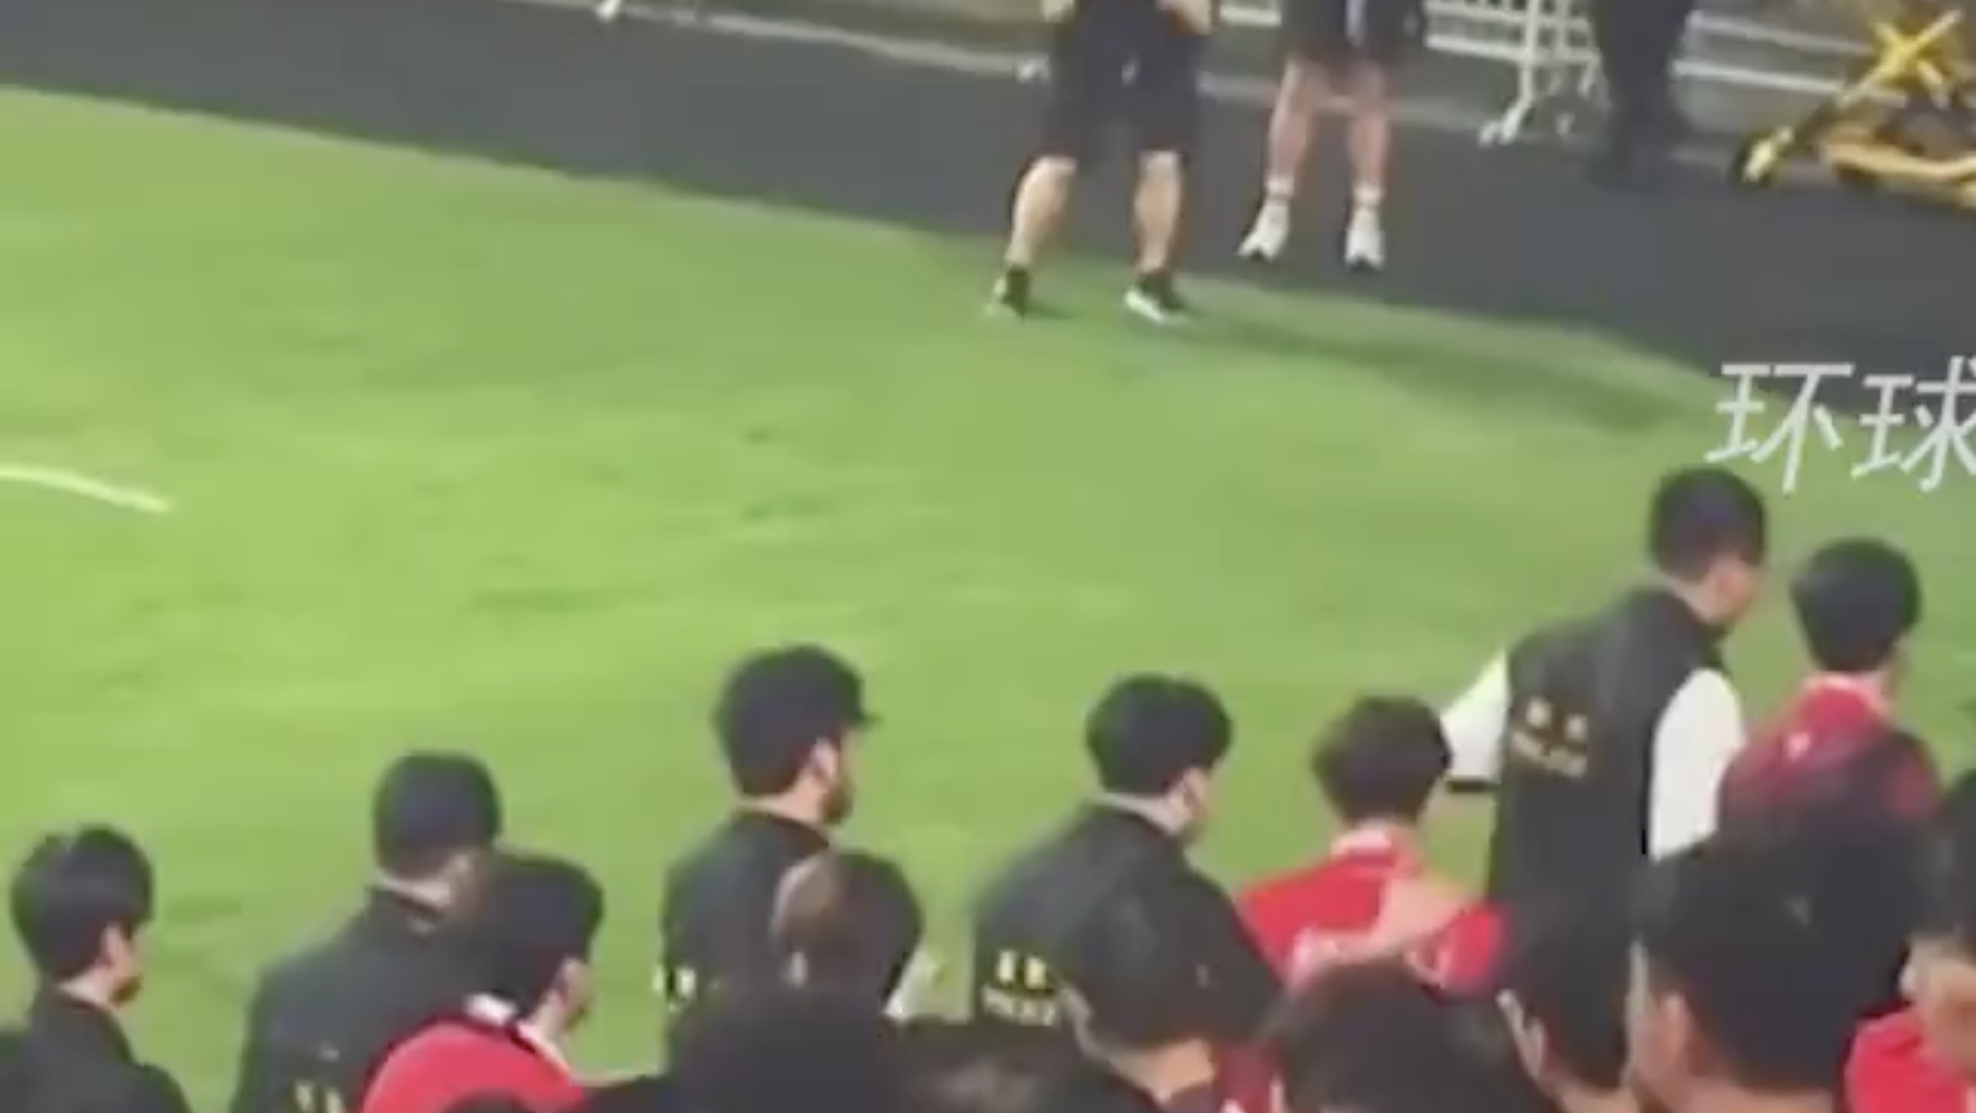 [新聞] 背向球場未站立 香港球迷被指「侮辱國歌」